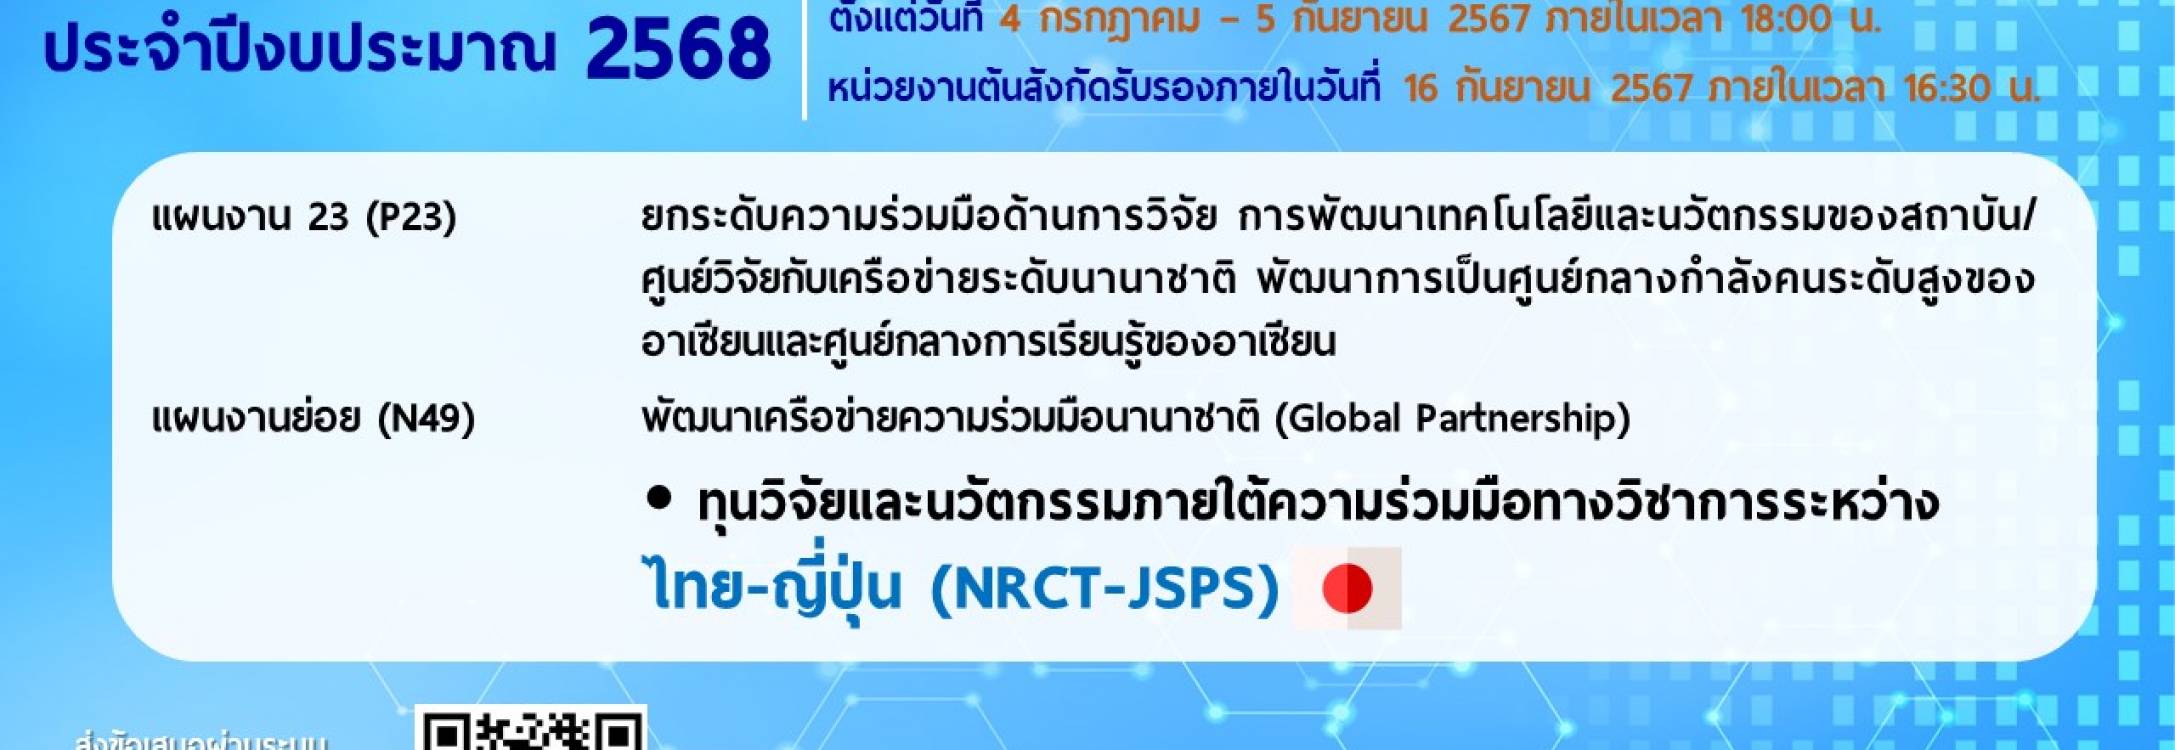 วช. ประกาศรับข้อเสนอการวิจัยและนวัตกรรม ประจำปีงบประมาณ 2568 ทุนวิจัยและนวัตกรรมภายใต้ความร่วมมือทางวิชาการระหว่างไทย-ญี่ปุ่น (NRCT-JSPS)